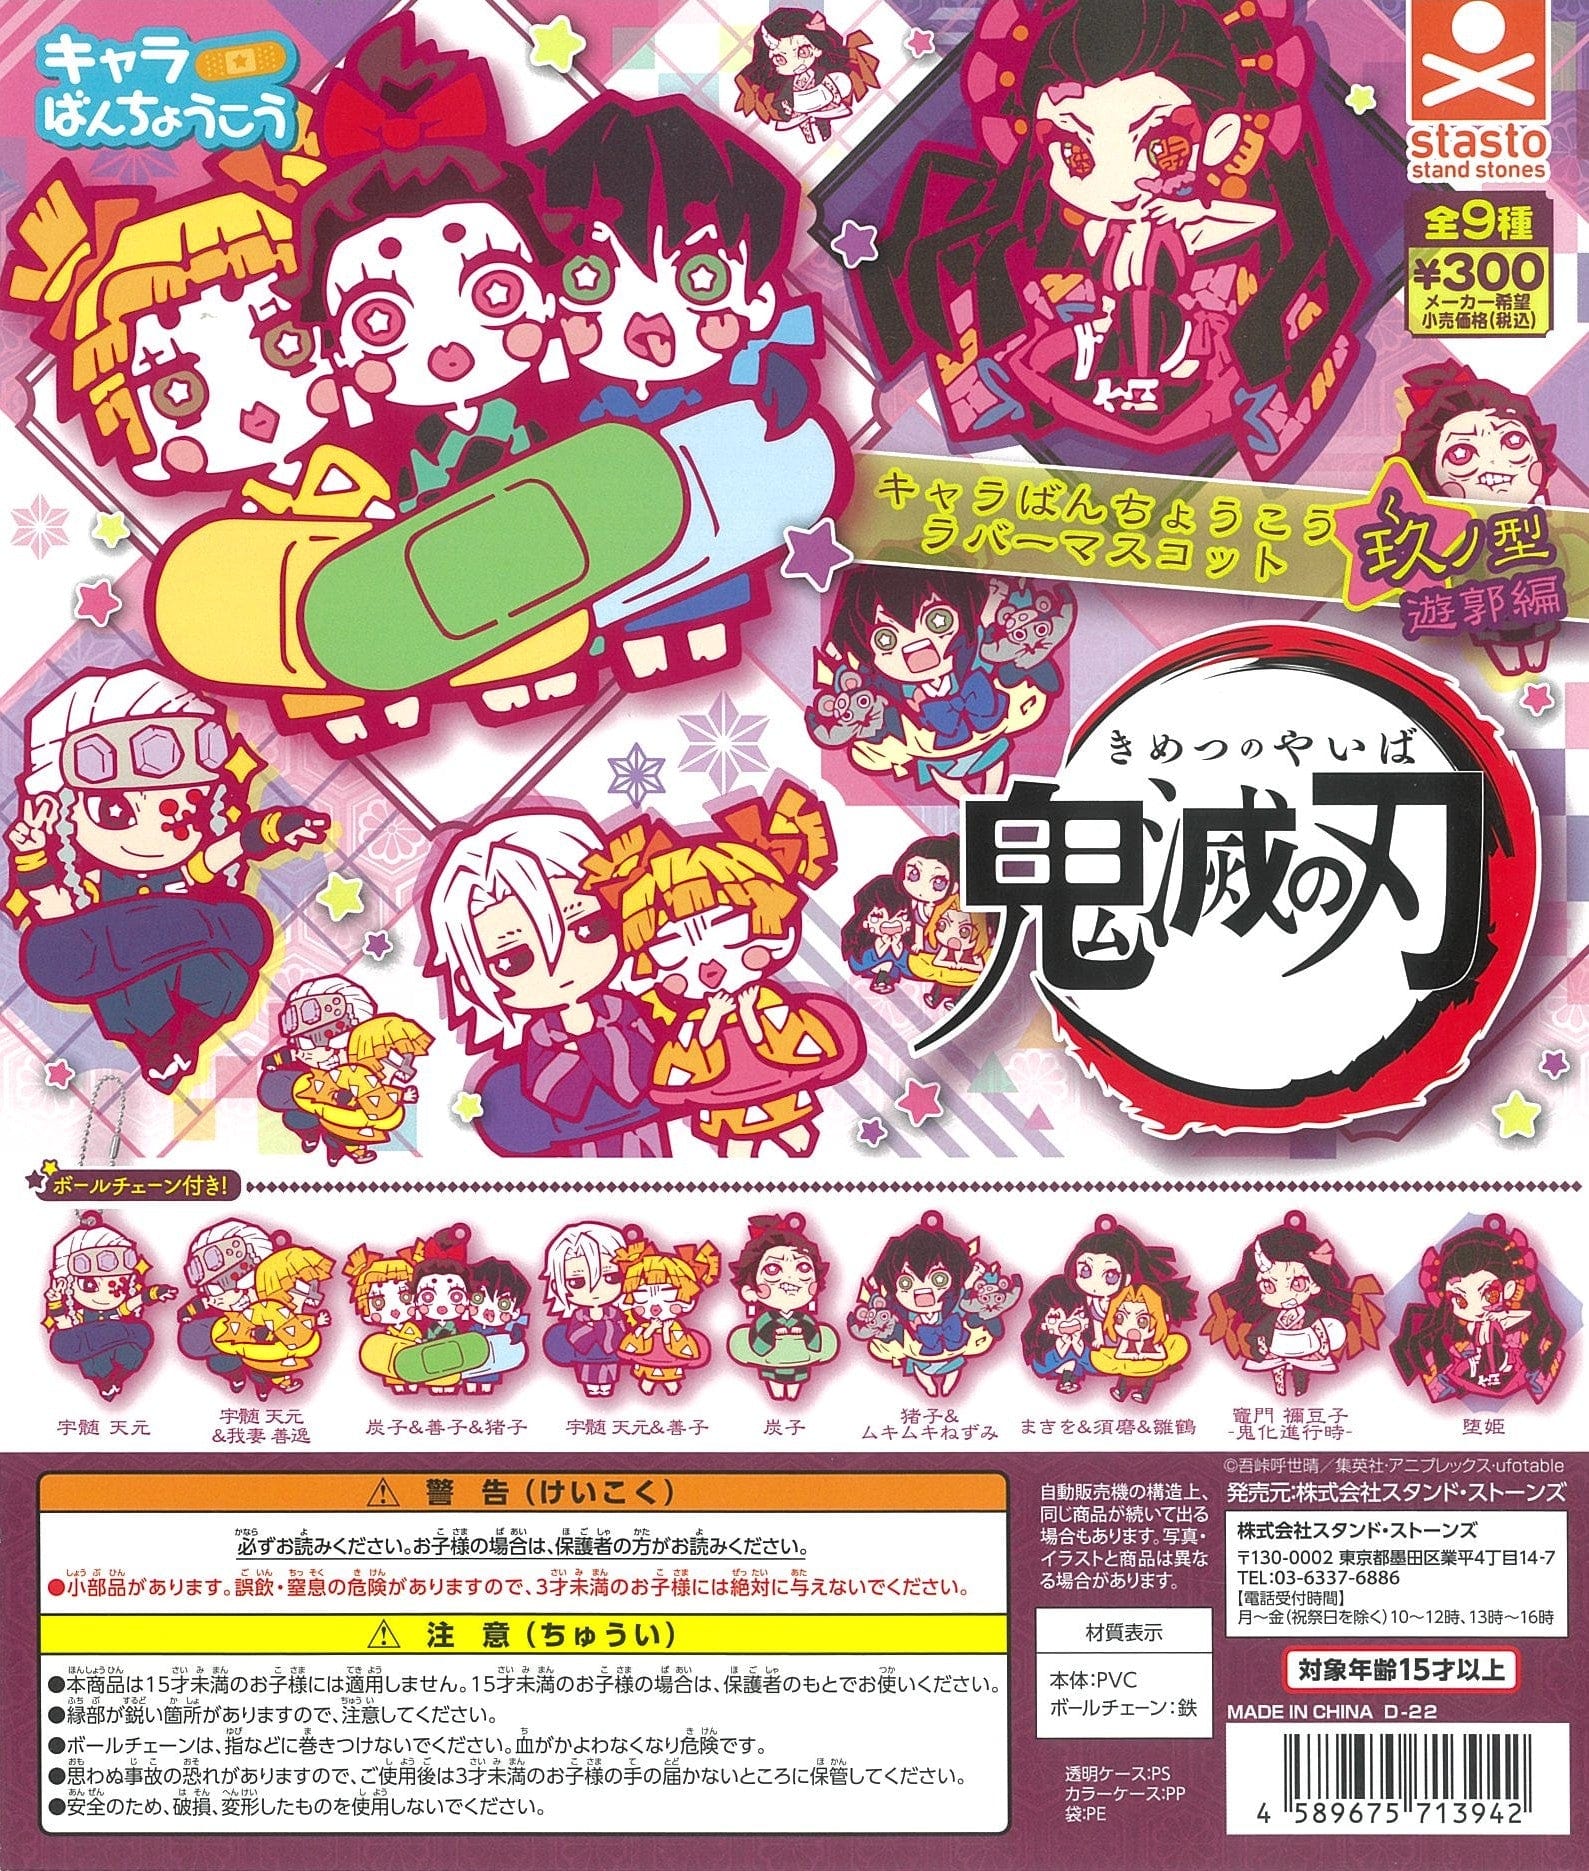 Stasto Stand Stone CP1572 Demon Slayer Kimetsu no Yaiba Chara Bandage Rubber Mascot Ninth Form (Vol. 9) Yukaku Ver